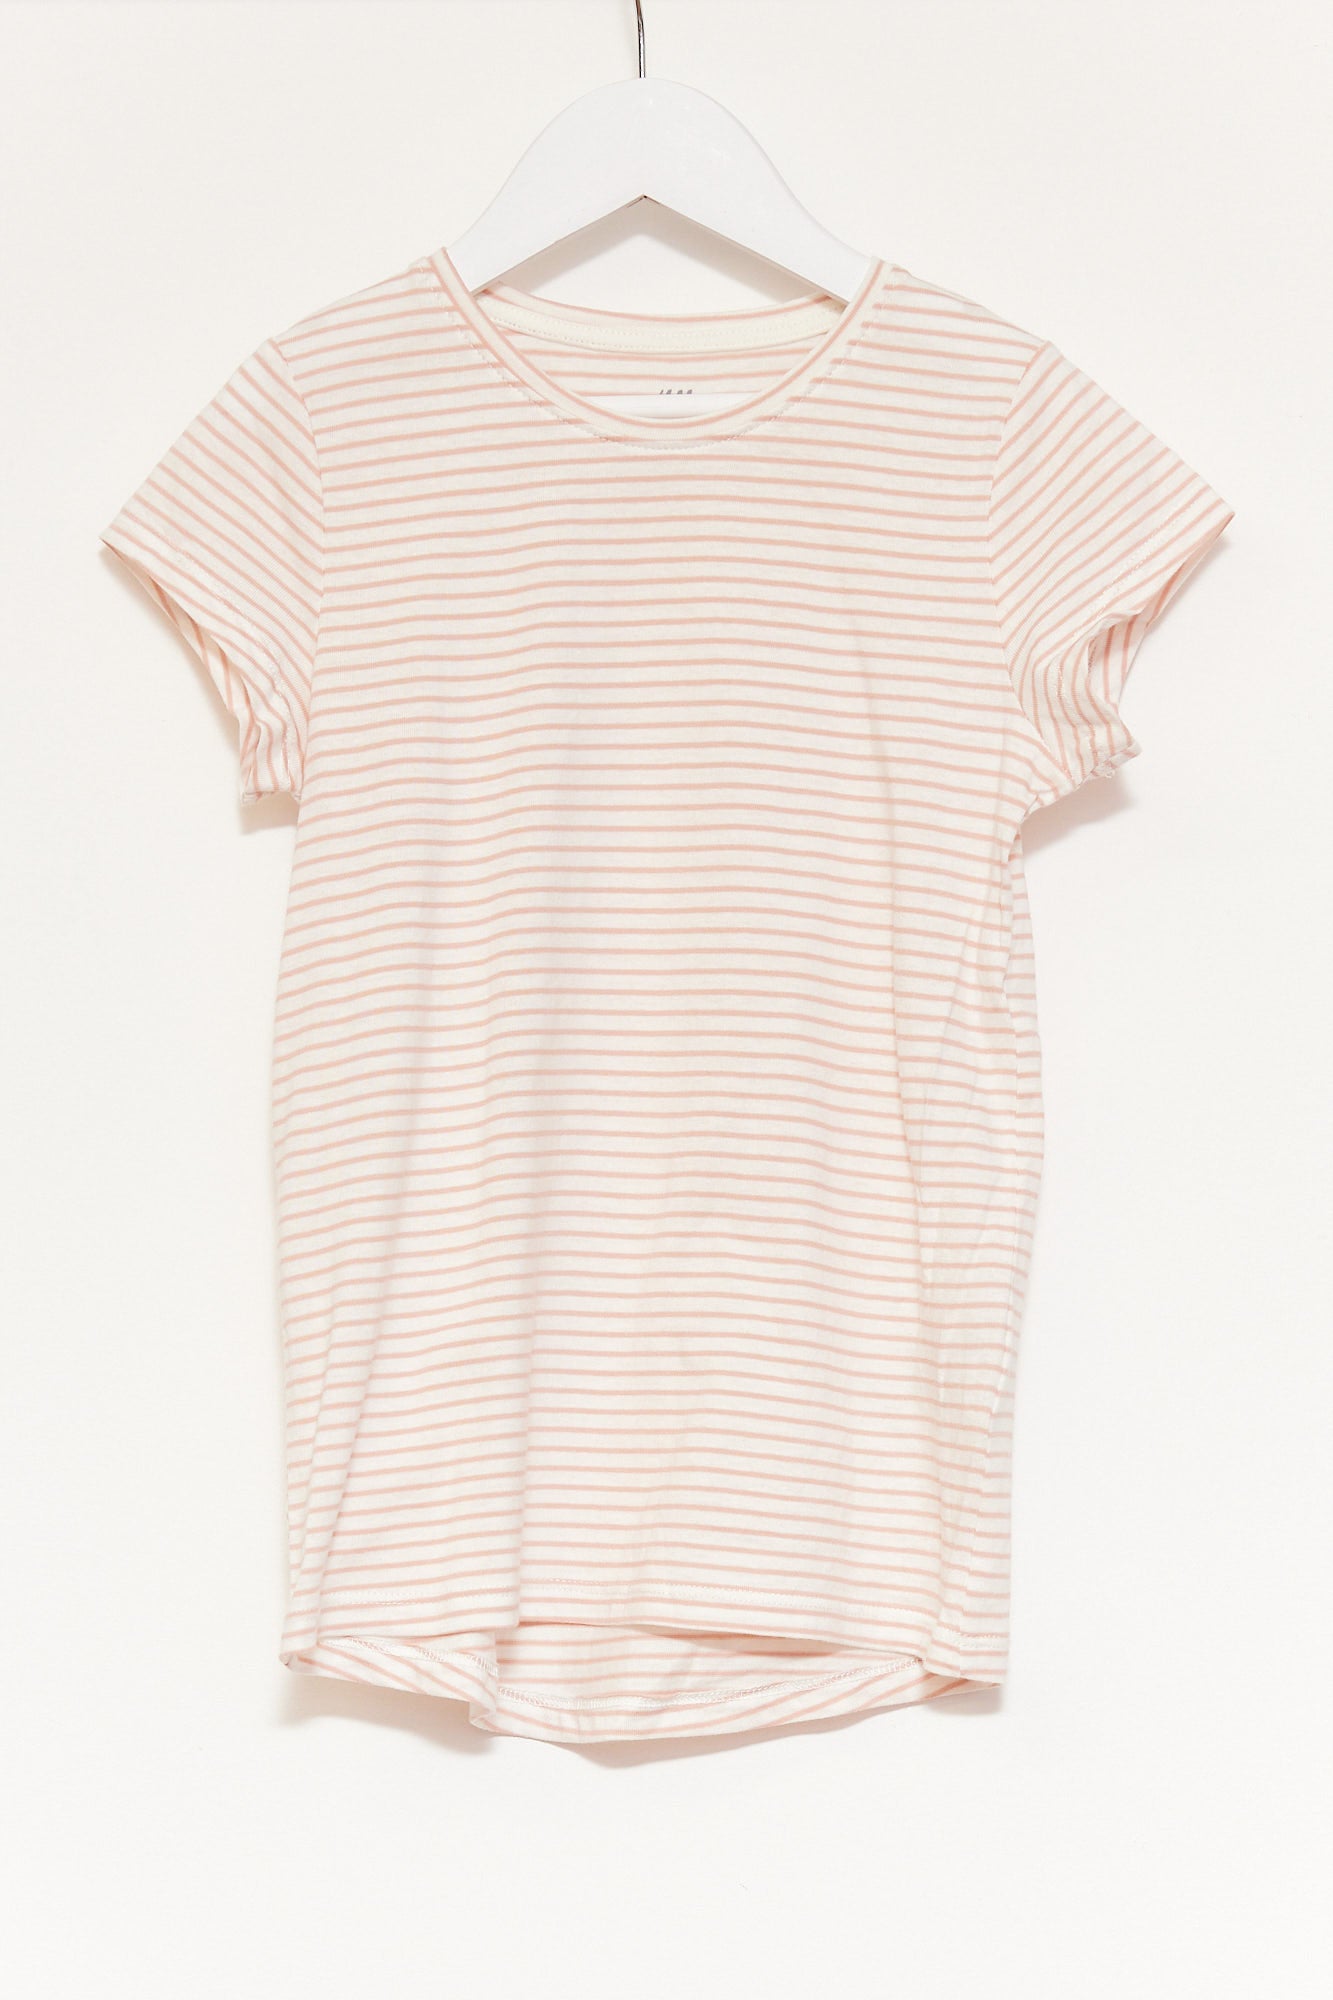 Kids H&M Pink & White Stripe T-shirt age 6-8